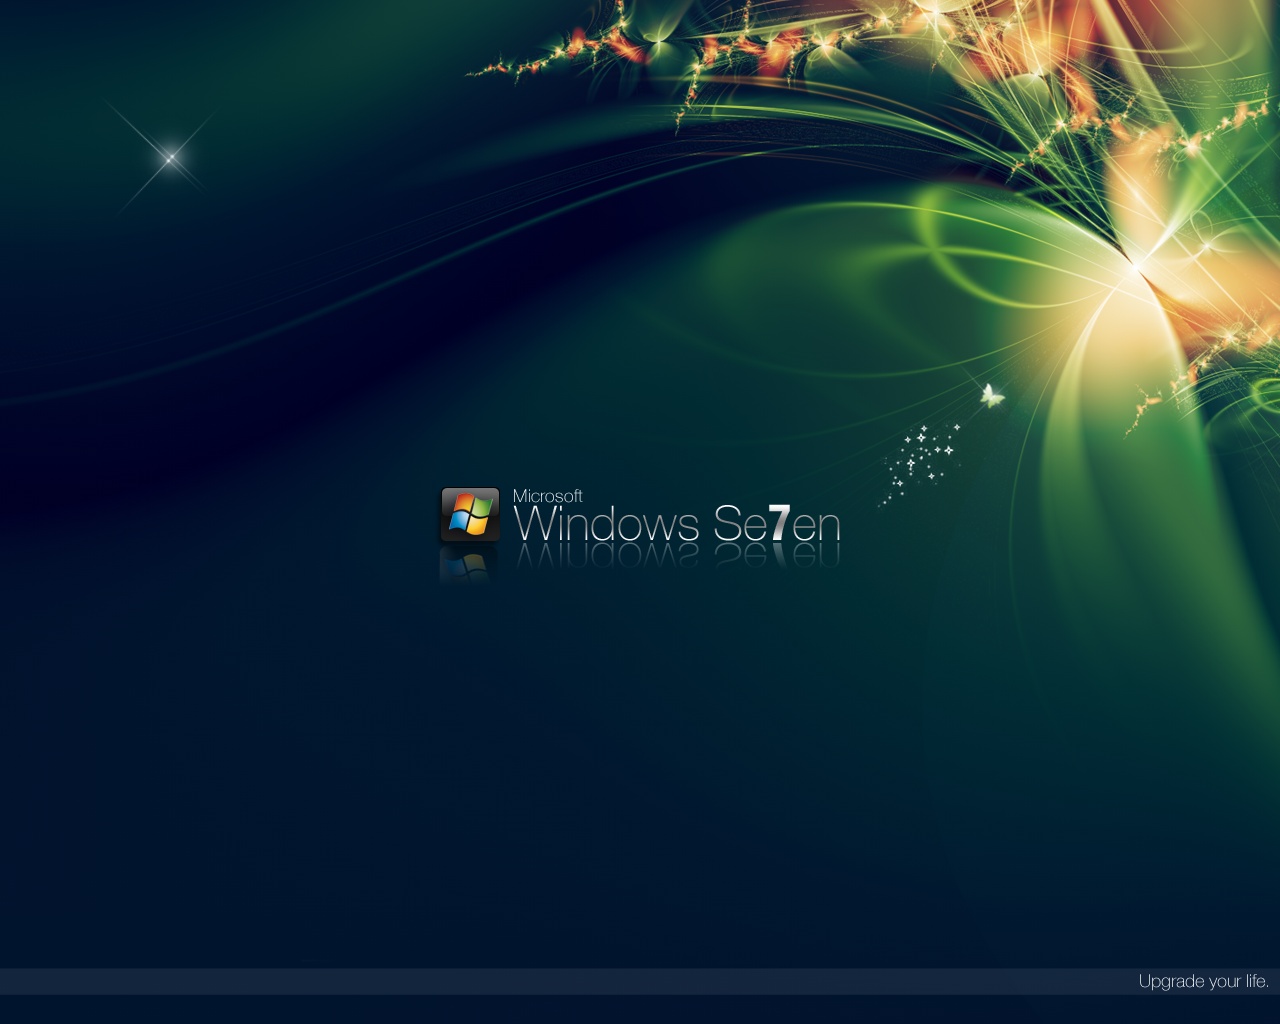 Green Windows 7 wallpaper. Green Windows 7